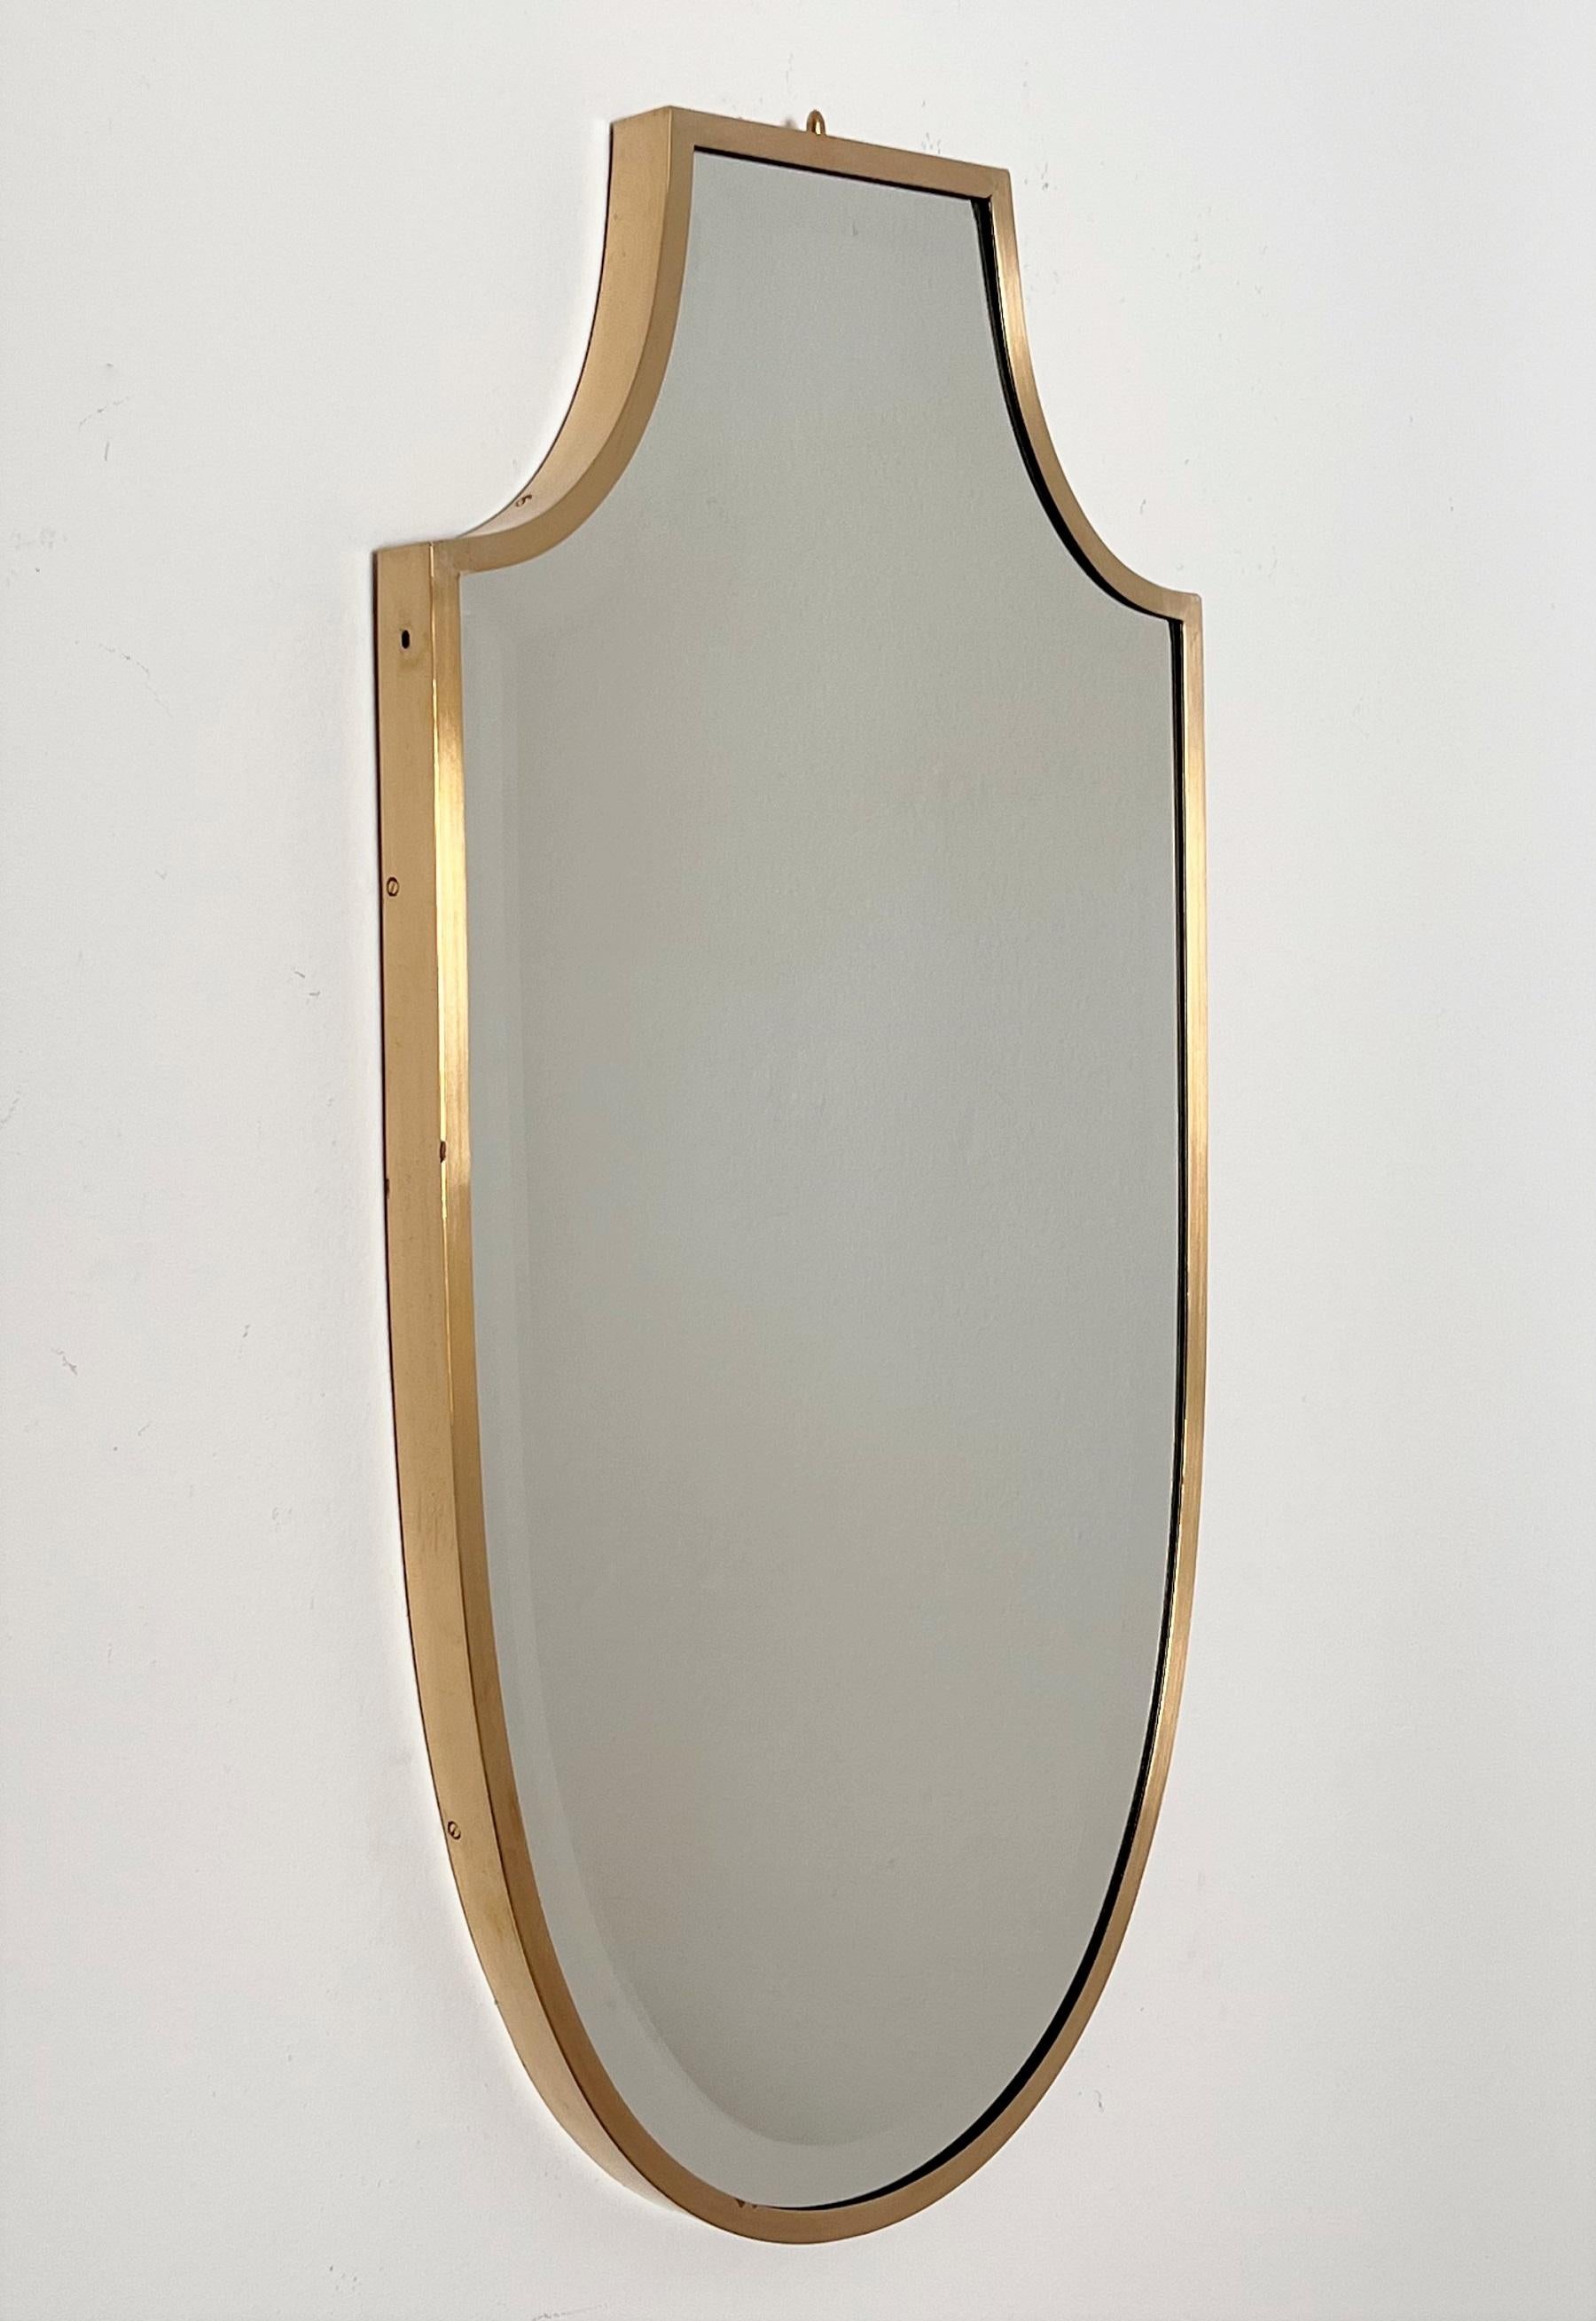 Wunderschöner Wandspiegel in Schildform mit geschliffenem Spiegelglas von hervorragender Verarbeitung.
Hergestellt in Italien in den späten 1970er Jahren.
Der volle und dicke Messingrahmen wurde professionell gereinigt, das Spiegelglas mit